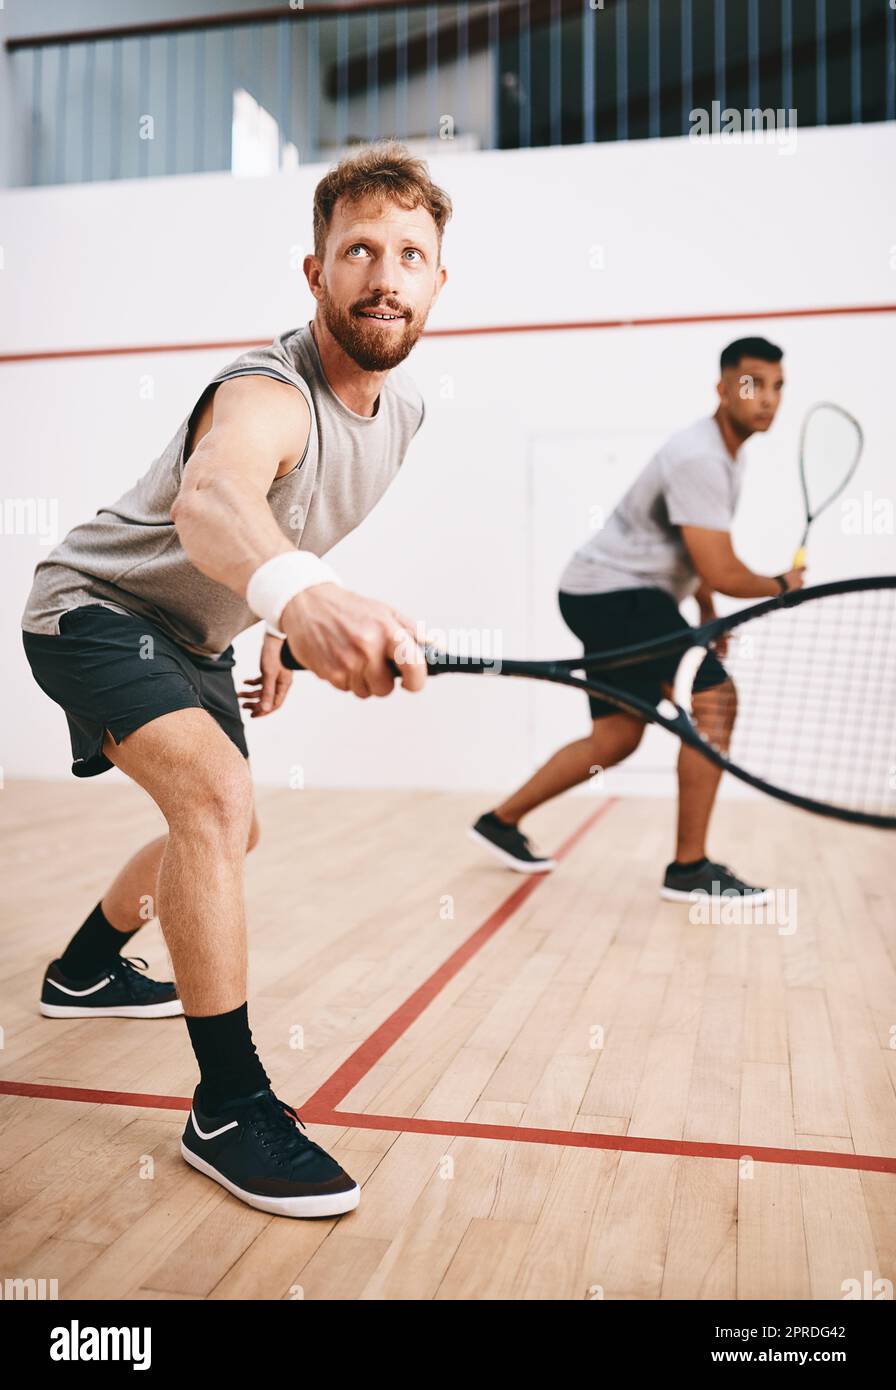 Ha occhi solo per la palla, due giovani che giocano una partita di squash. Foto Stock